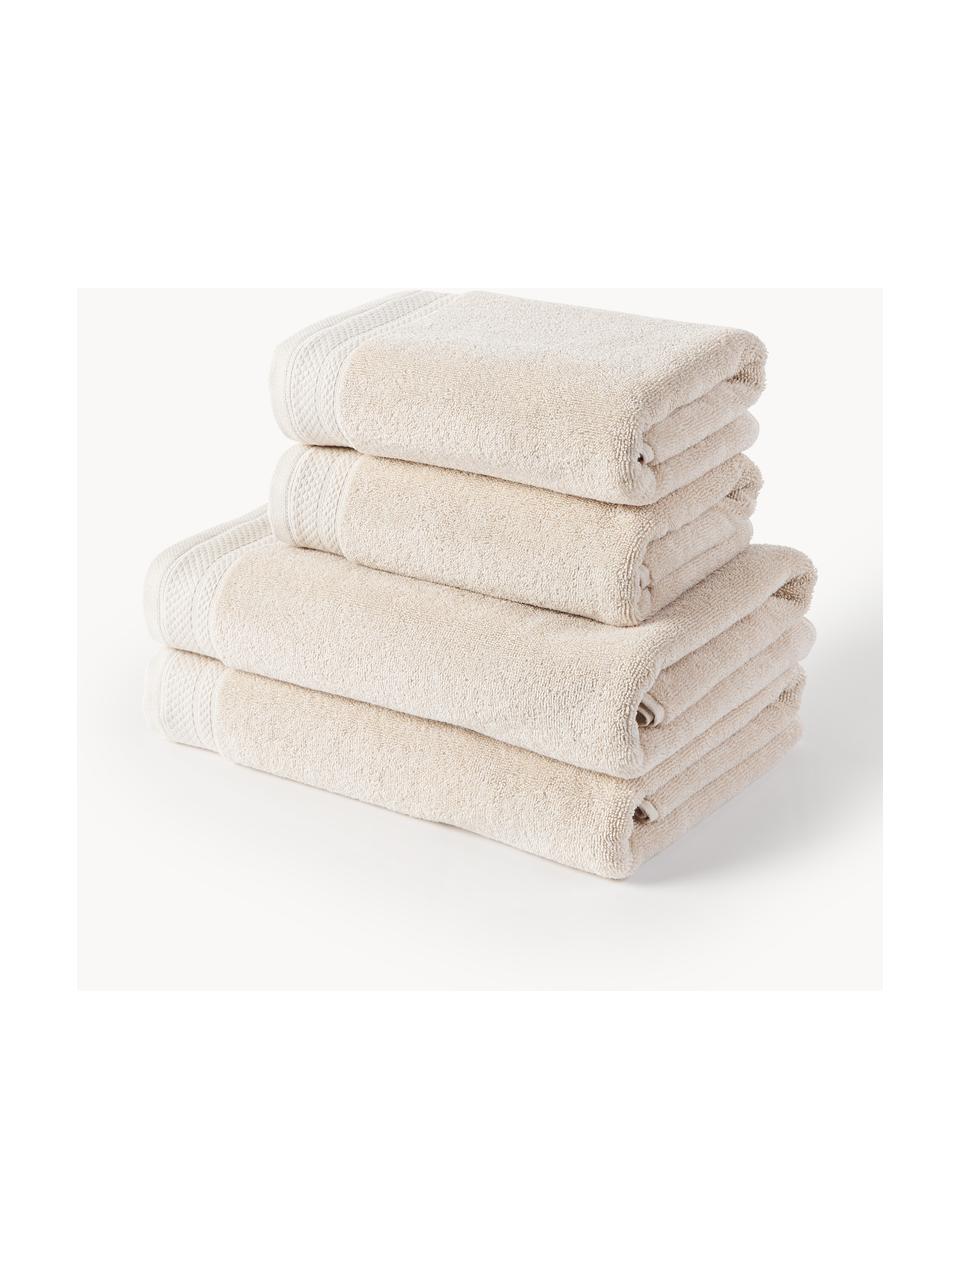 Lot de serviettes de bain en coton bio Premium, tailles variées, Beige clair, 3 éléments (1 serviette invité, 1 serviette de toilette et 1 drap de bain)